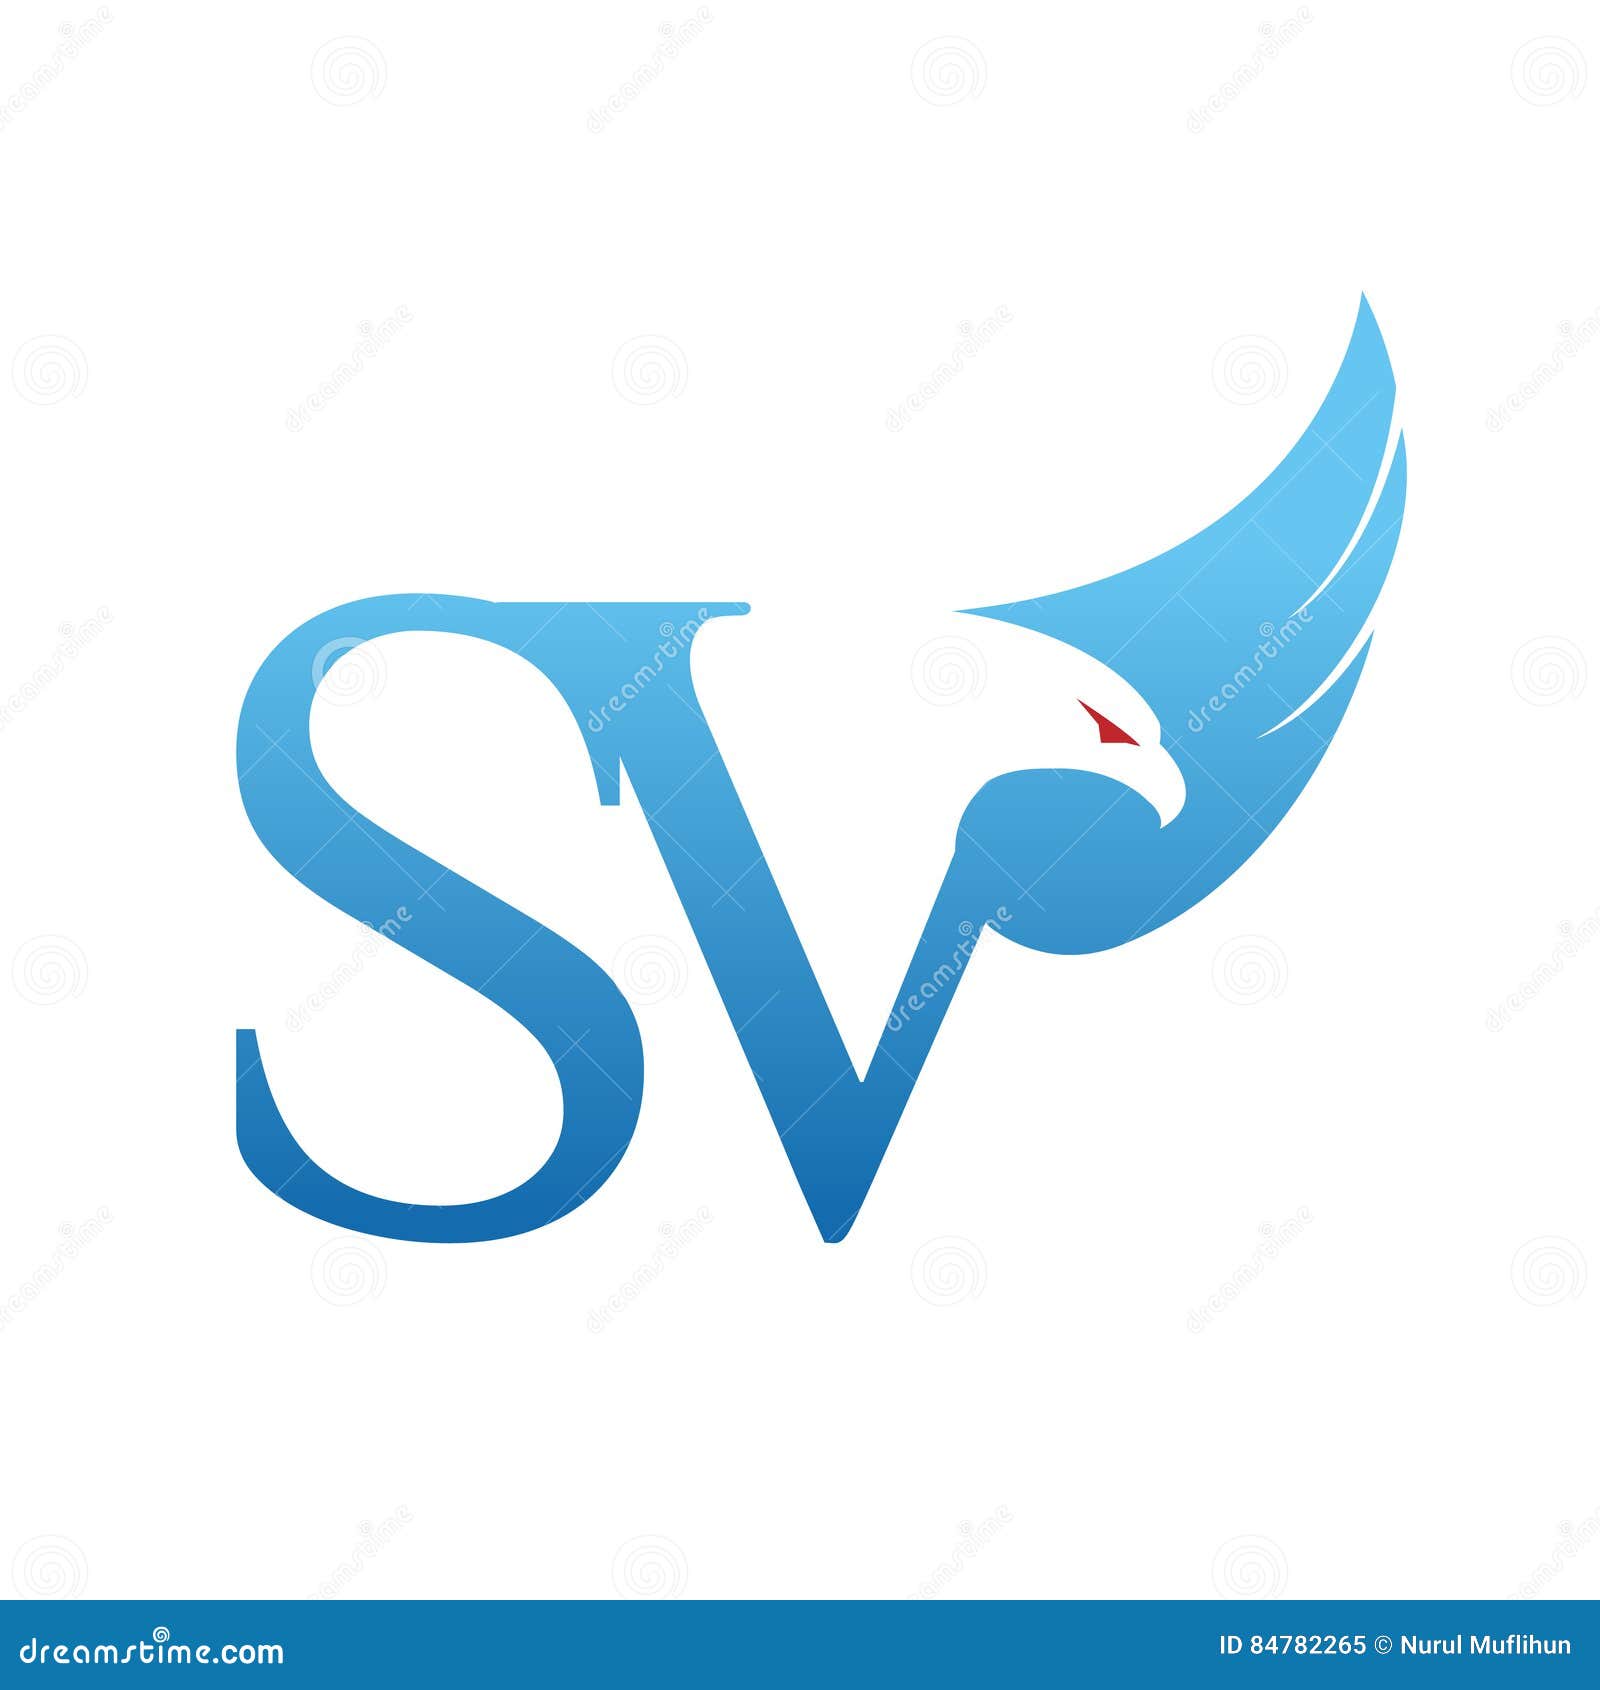 svsolution - SV SOLUTION COMPANY LTD